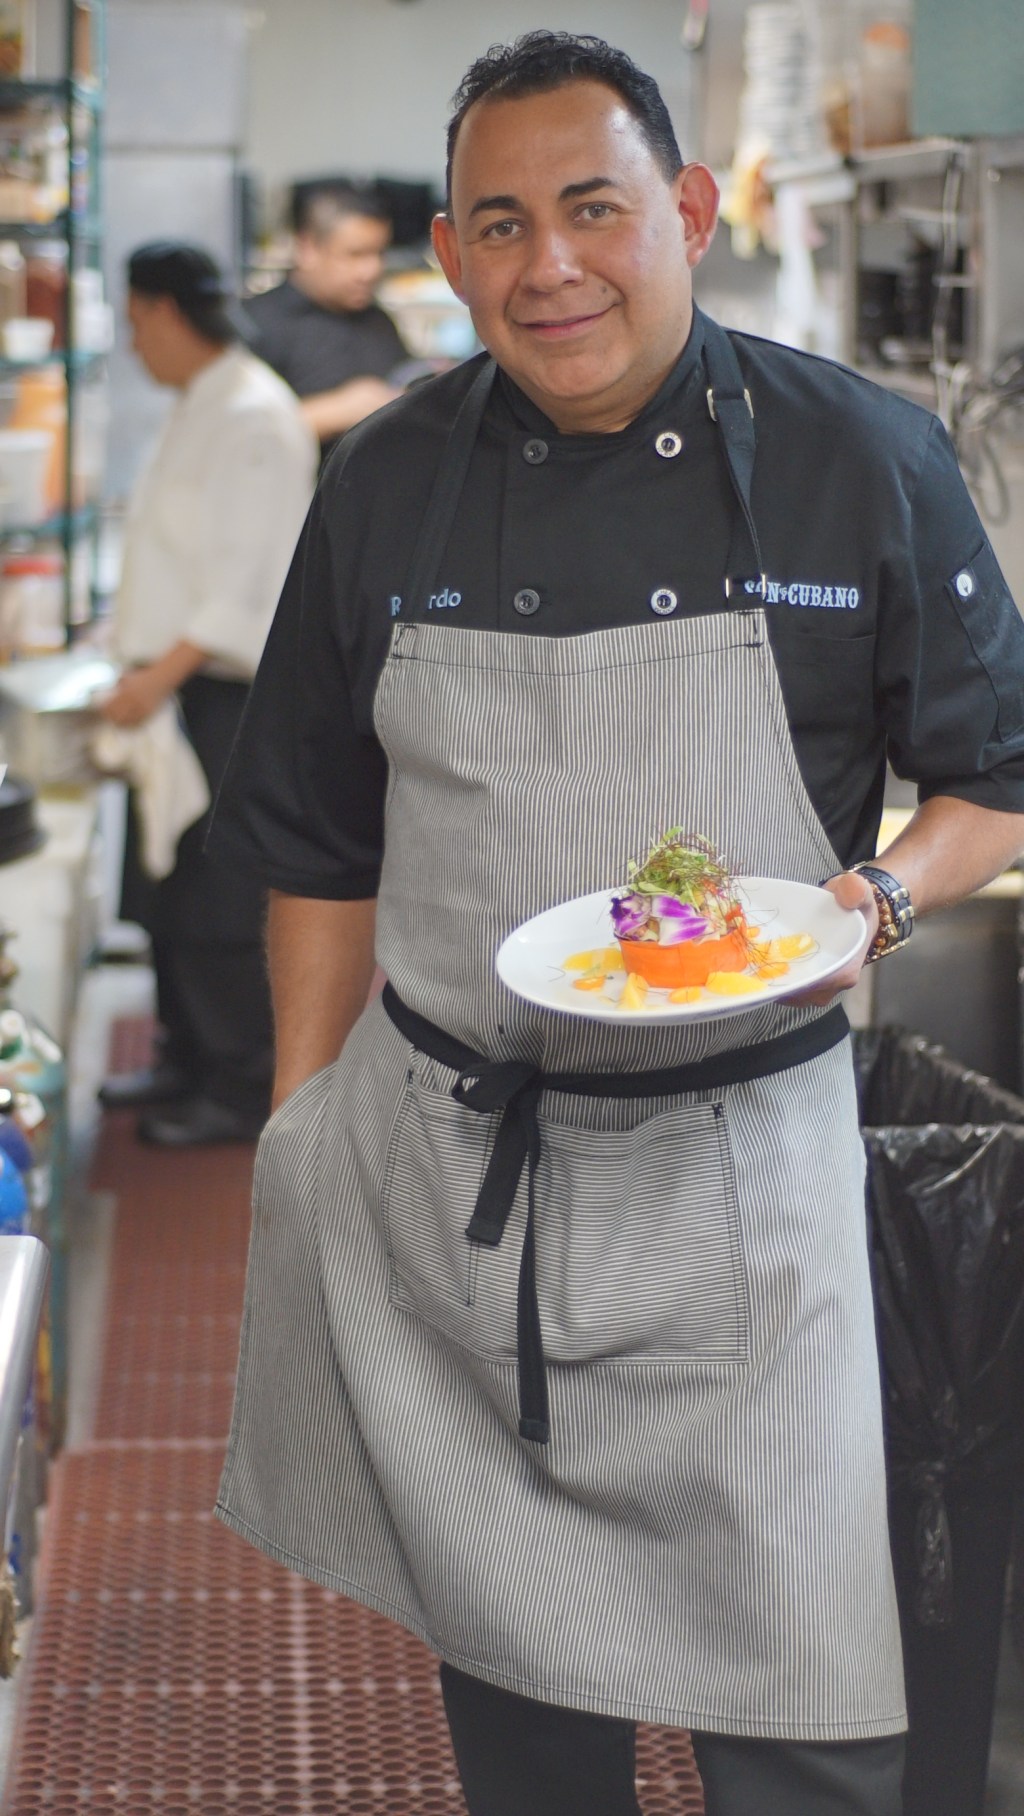 El chef Ricardo Cardona es el encargado de la cocina del famoso restaurante Son Cubano, además de cocinarle a Marc Anthony y al equipo de los Yankees./Cortesía